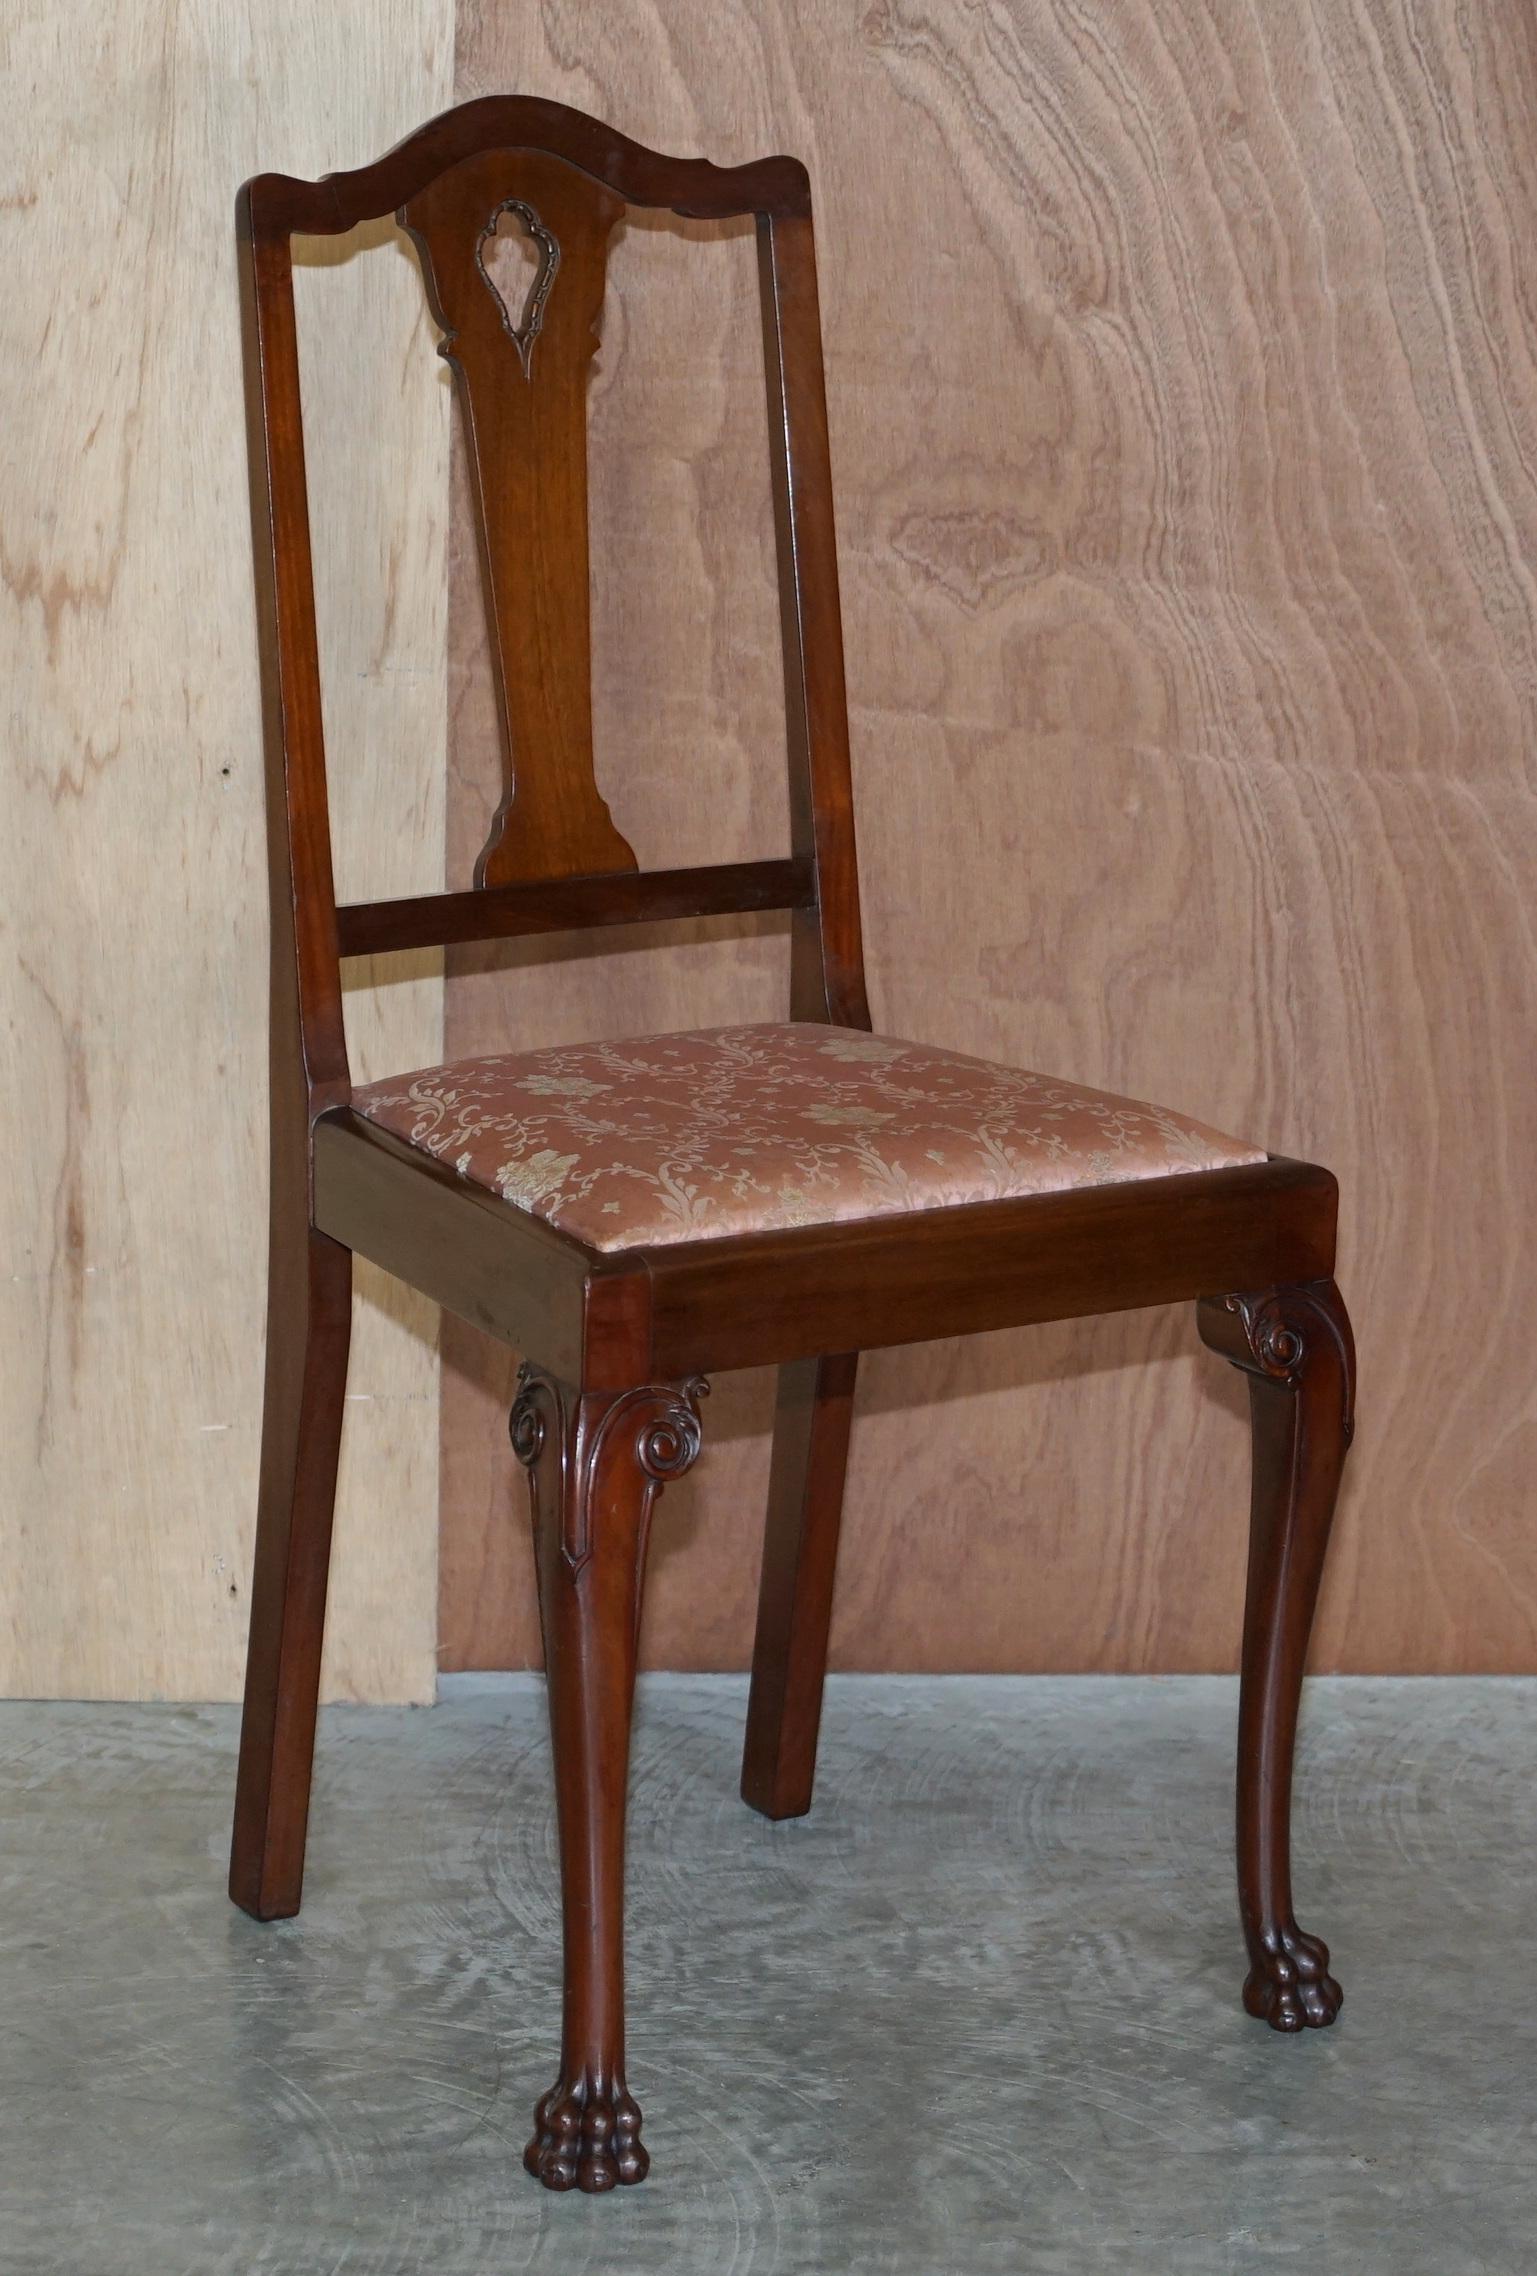 Nous avons le plaisir de proposer à la vente cette paire de chaises d'appoint en acajou du Honduras de la fin de l'époque victorienne, avec des pieds en forme de pattes de lion sculptées

Ces chaises sont de la plus haute qualité, le bois était